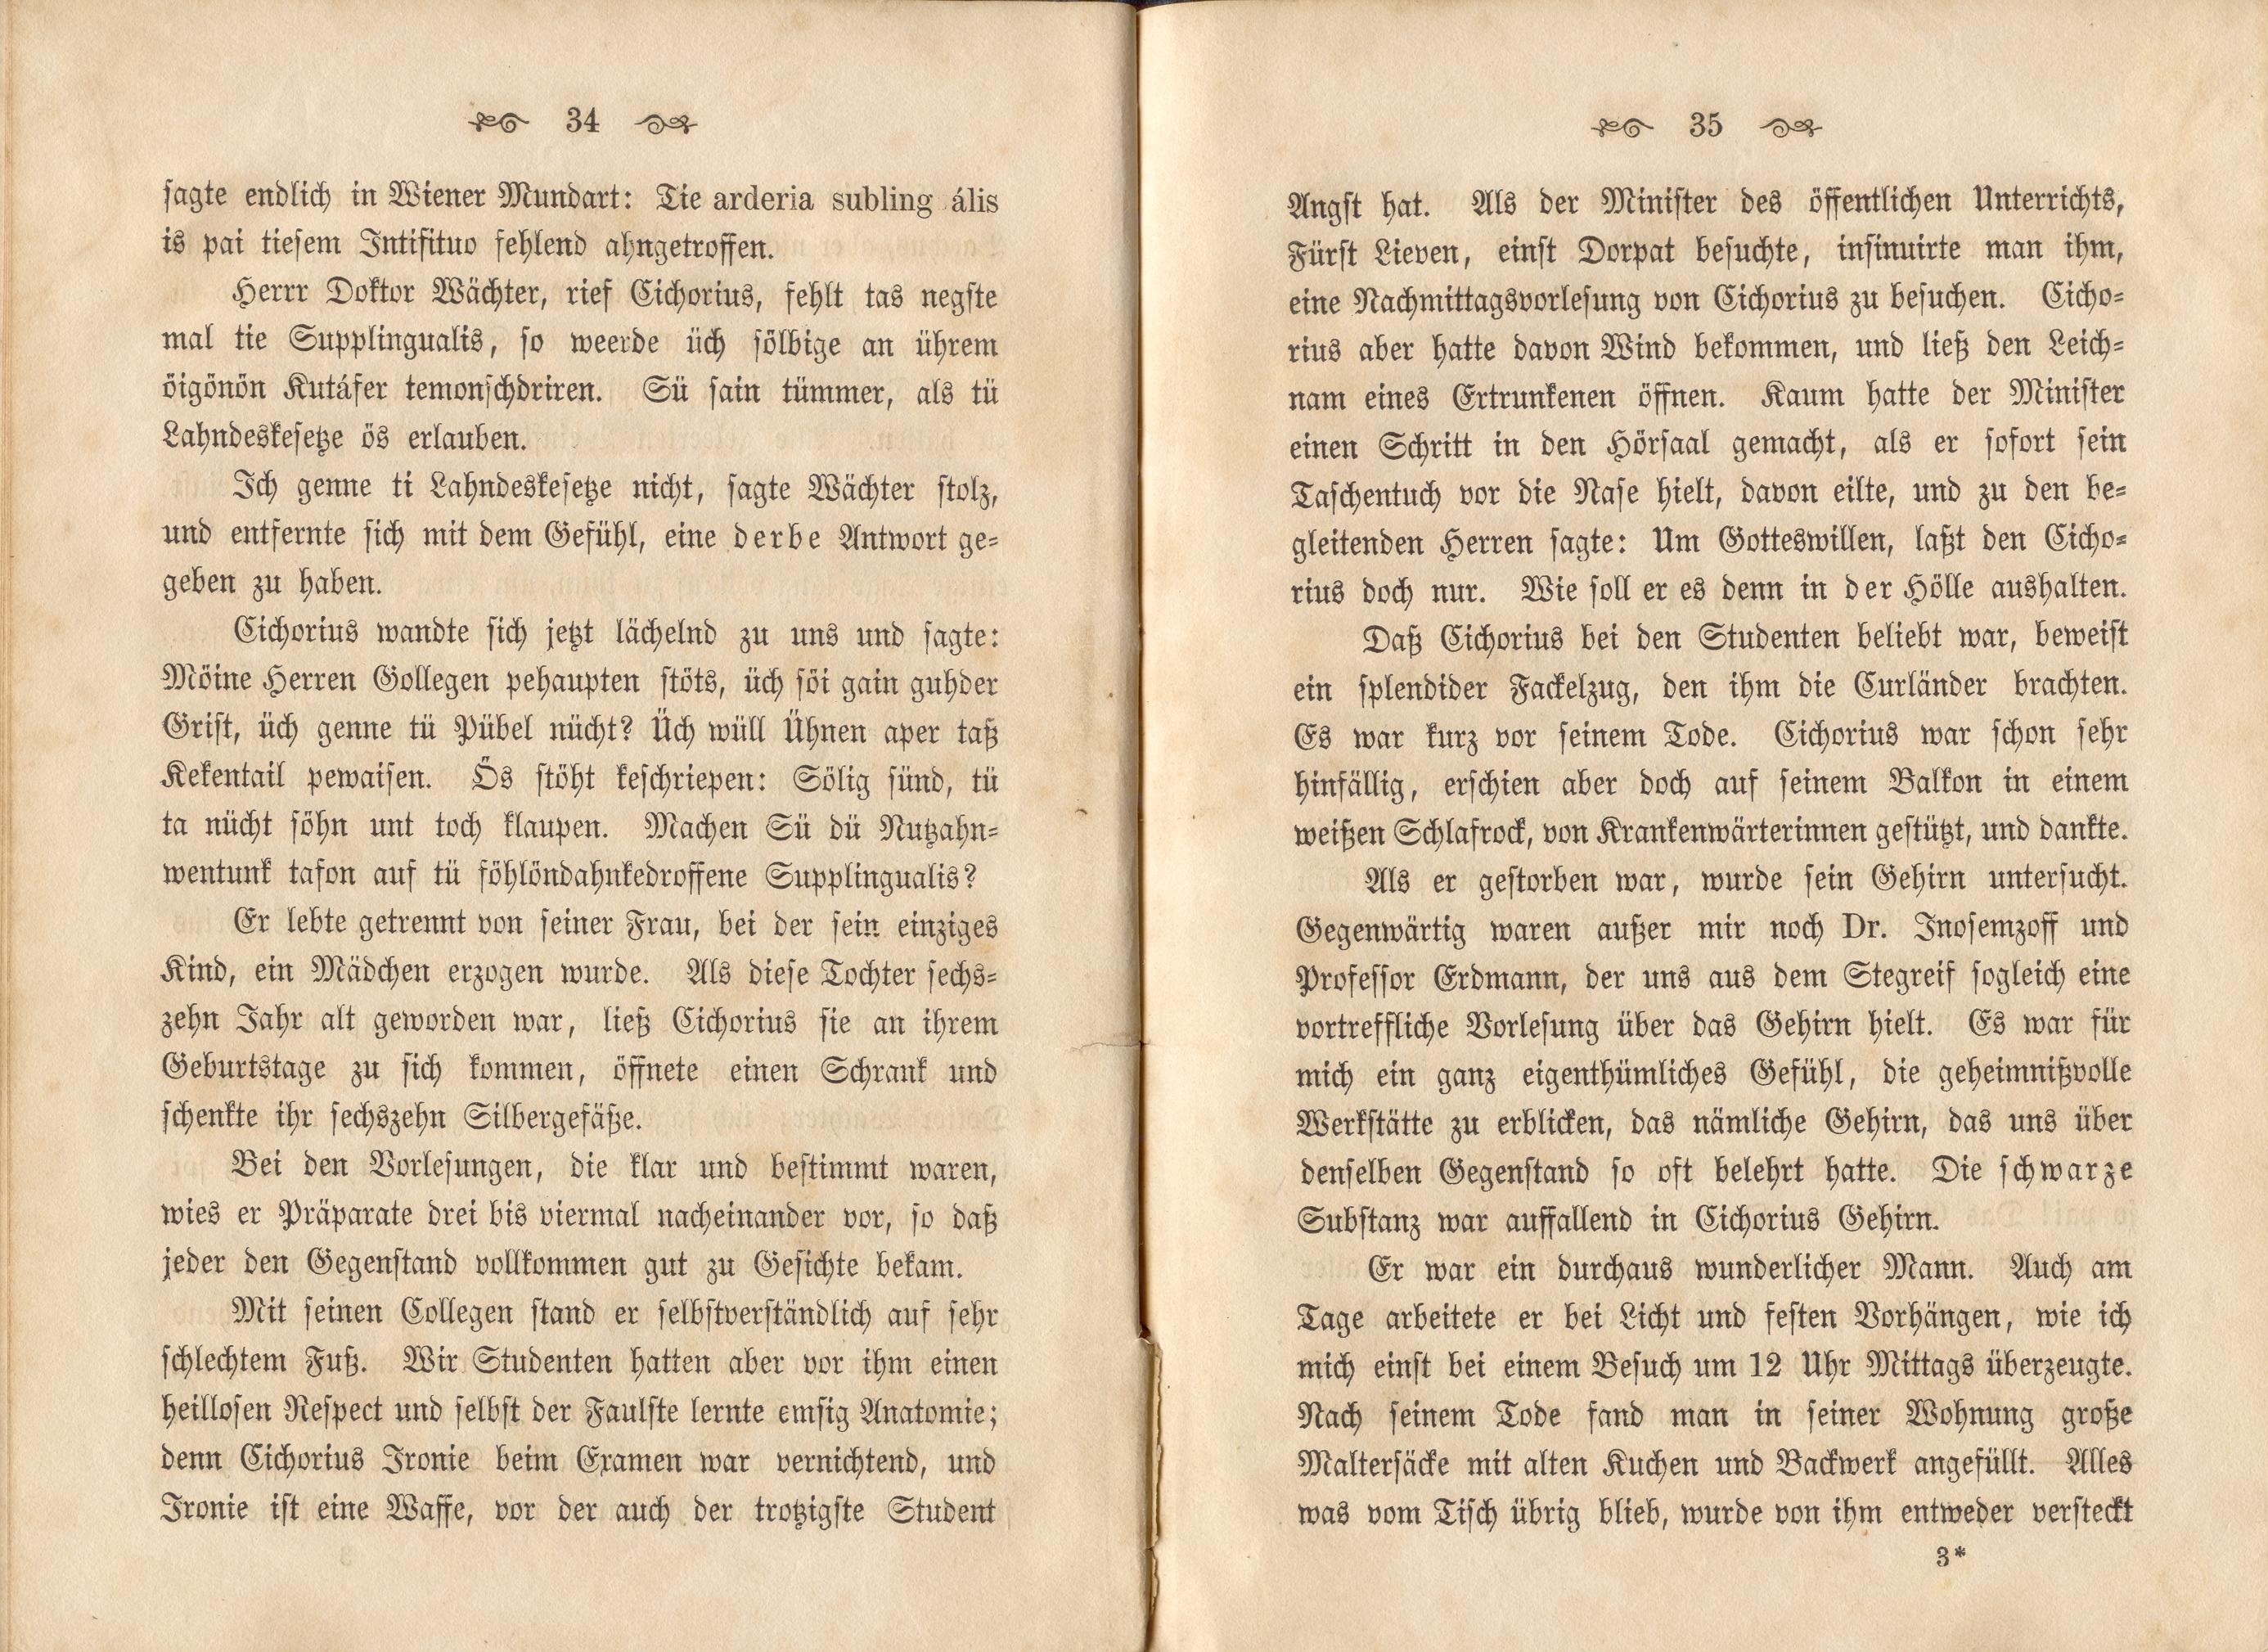 Dorpats Grössen und Typen (1868) | 20. (34-35) Main body of text